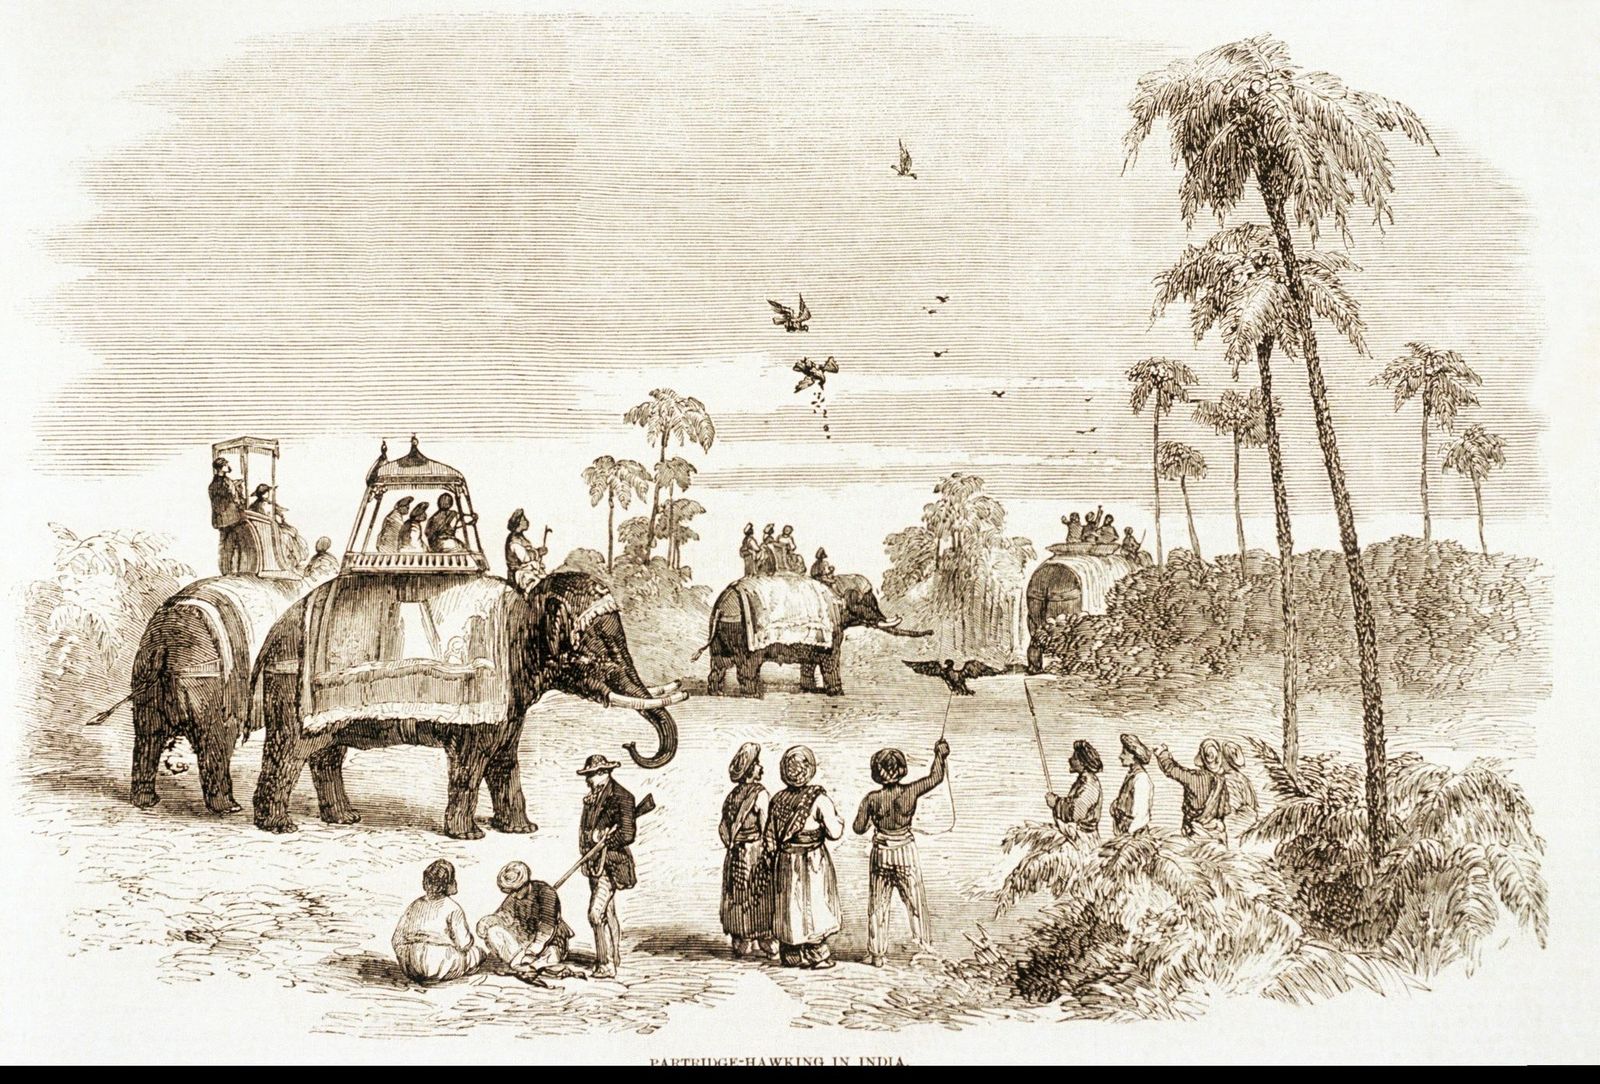 رسم لأحد مناطق الهند في القرن التاسع عشر - Getty Images